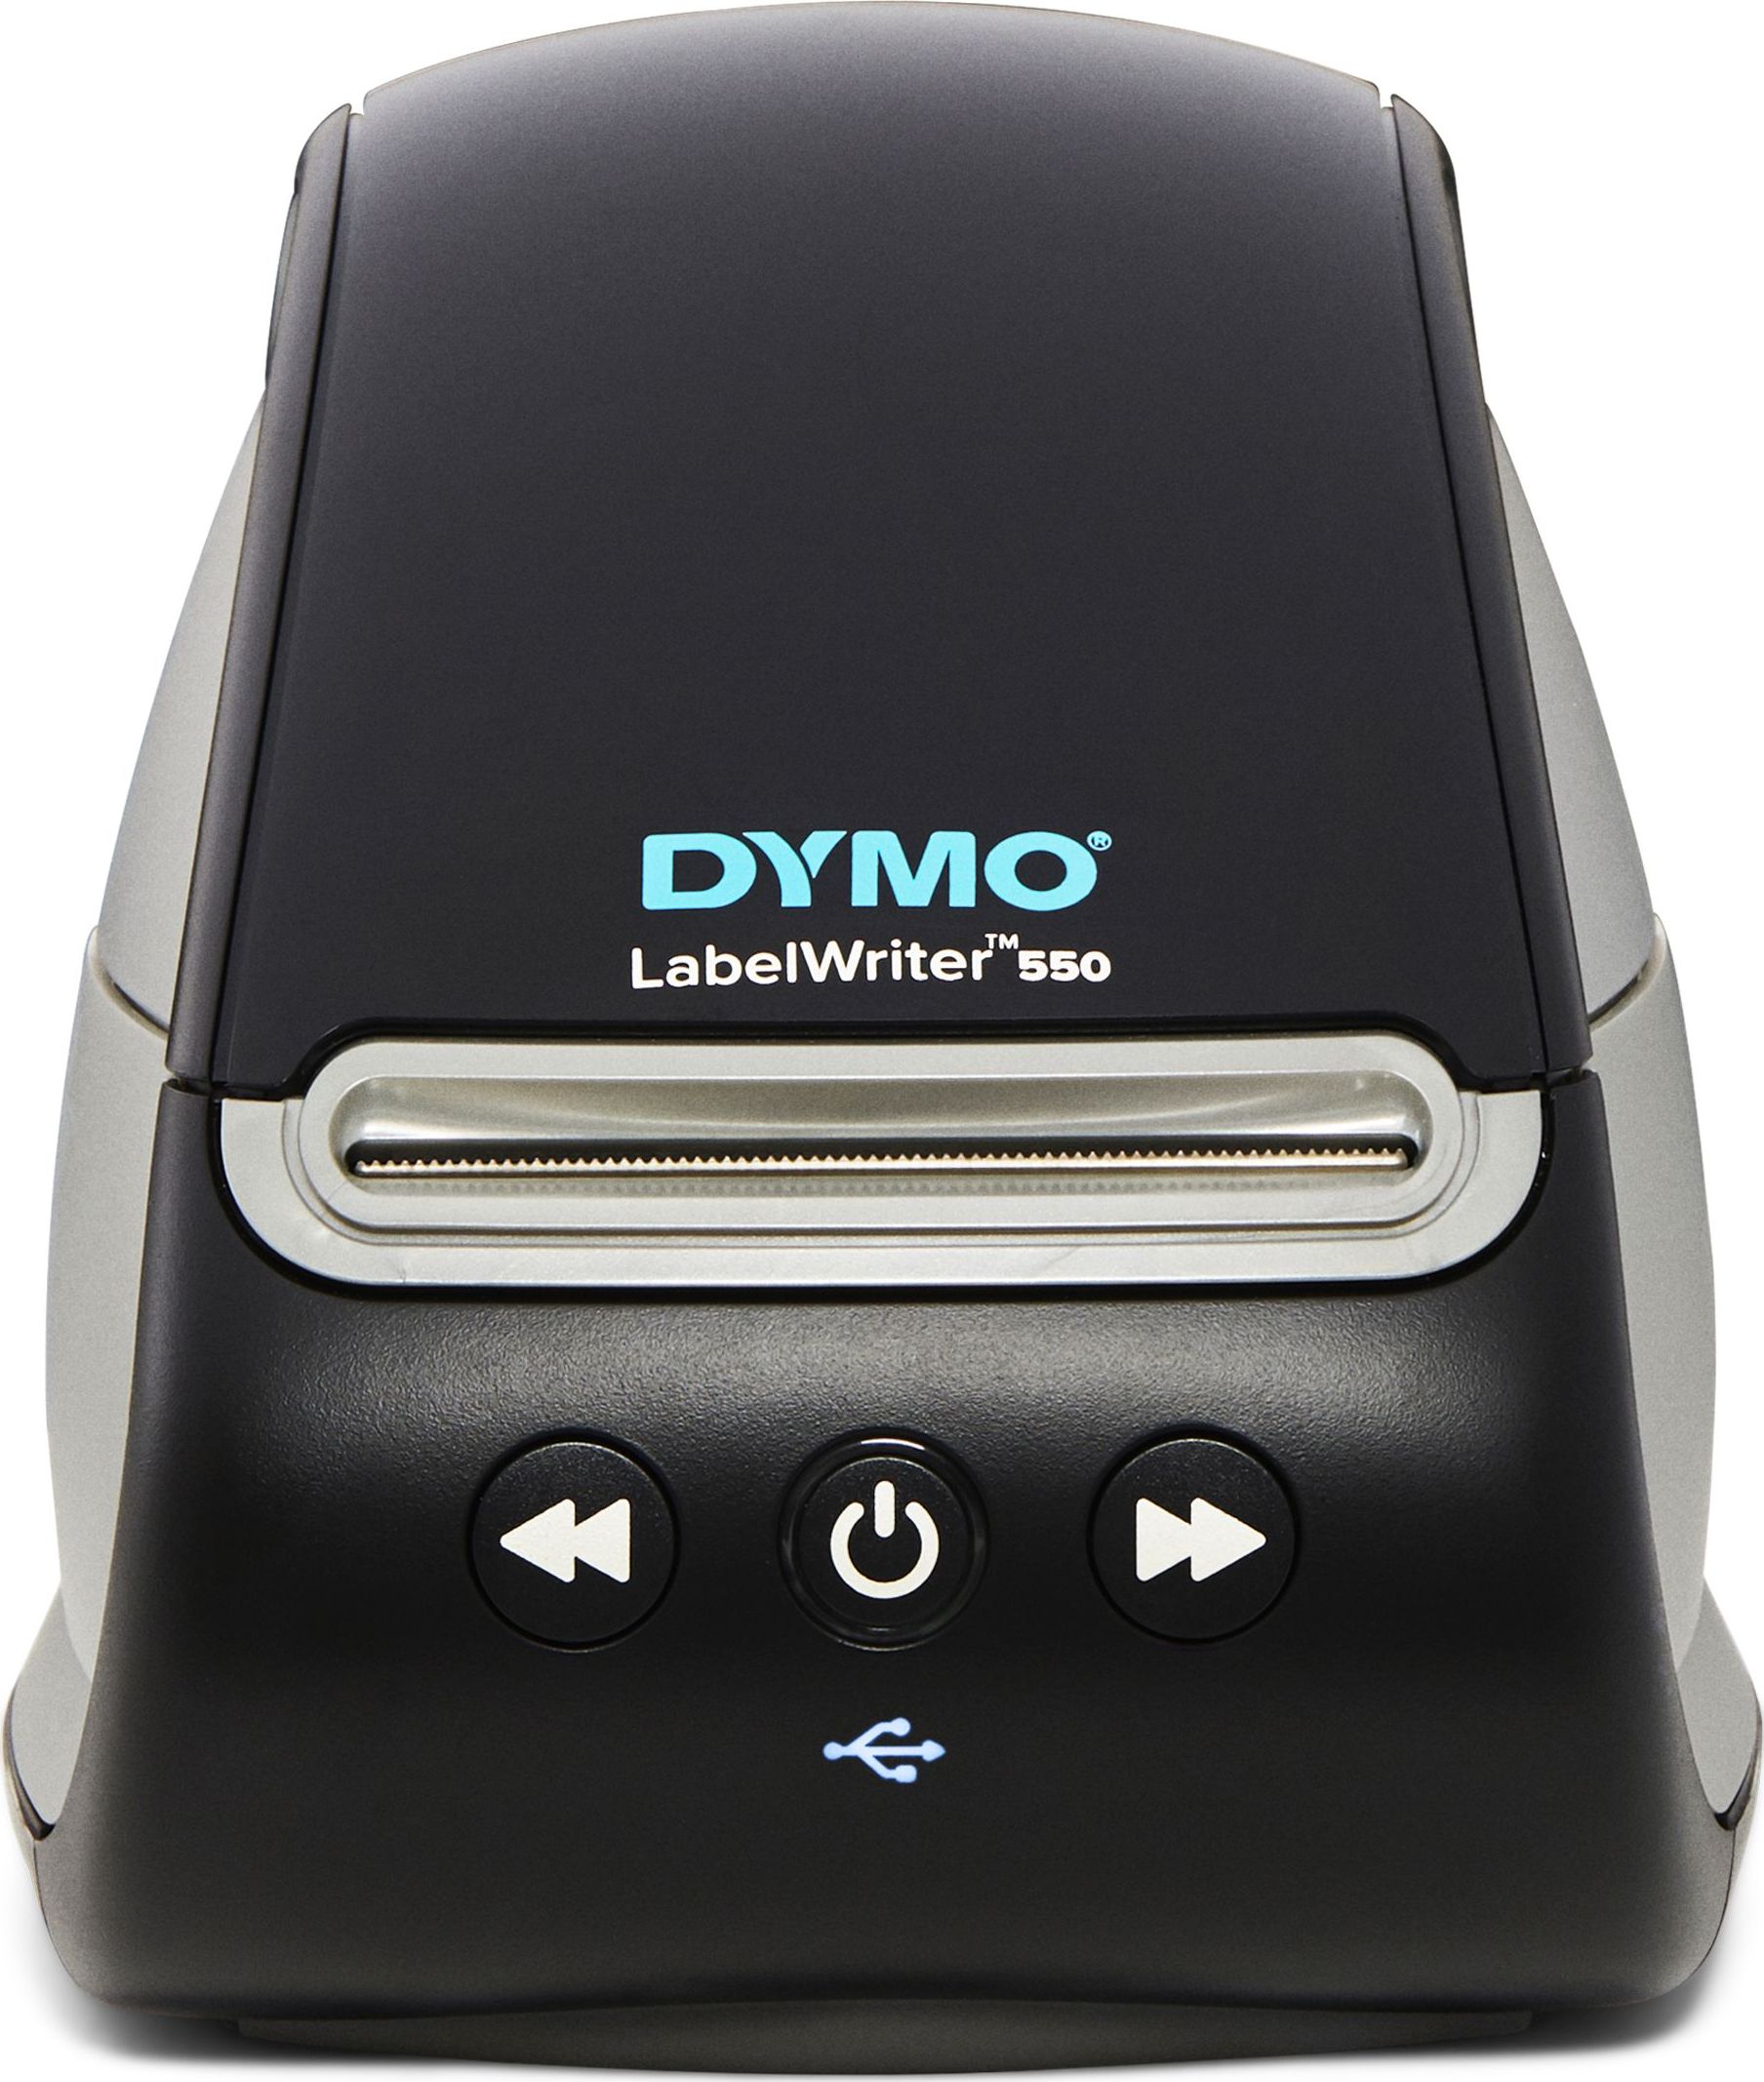 Imprimanta termica etichete DYMO LabelWriter 550, senzor recunoastere eticheta, aparat de etichetat, priza EU 2112722